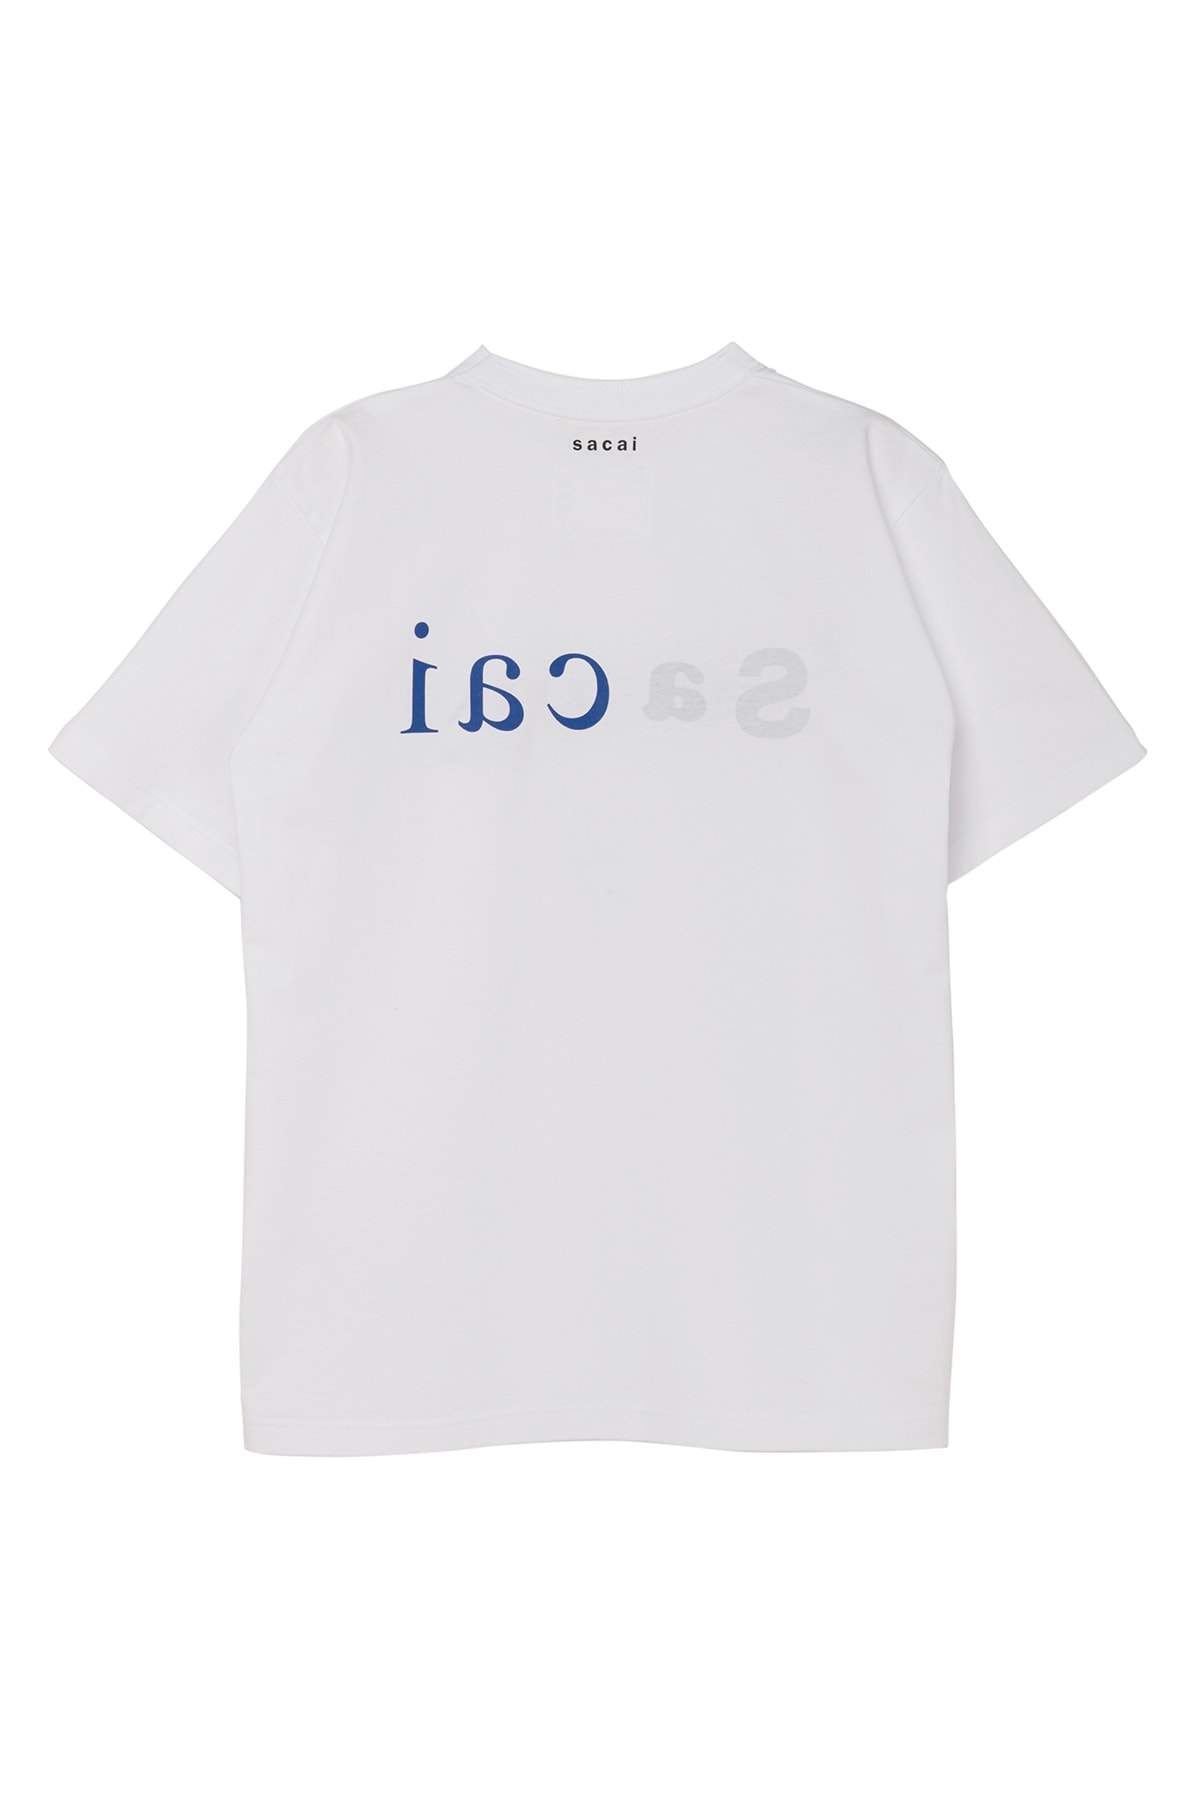 サカイから『a magazine curated by sacai』の限定 Tシャツが発売 A MAGAZINE curated by sacai limited T-shirts release info